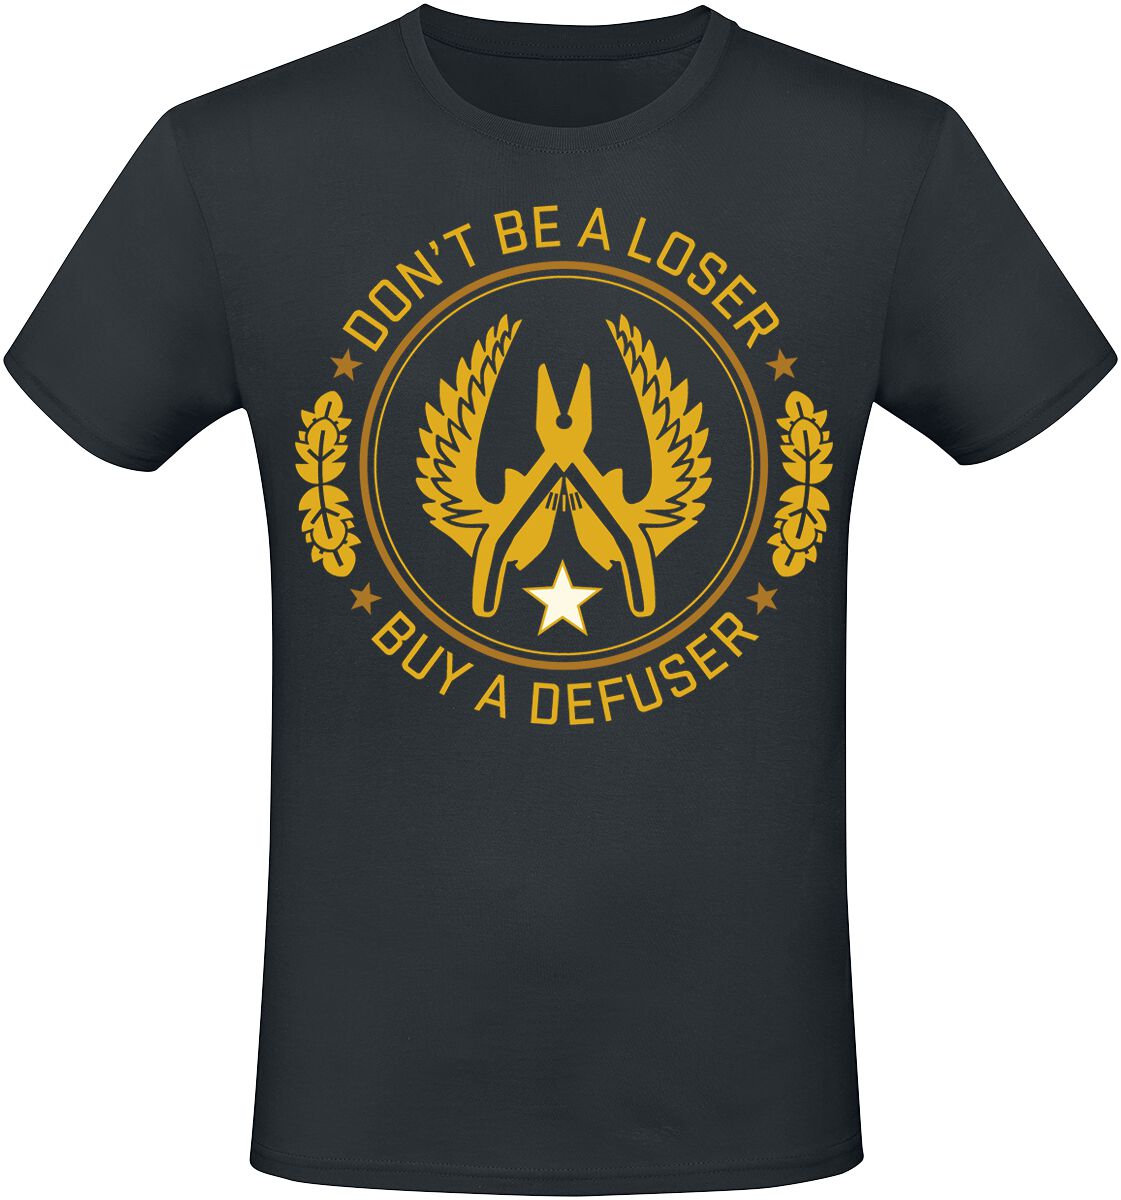 Counter-Strike - Gaming T-Shirt - 2 - Defuser - S bis XXL - für Männer - Größe XL - schwarz  - EMP exklusives Merchandise!